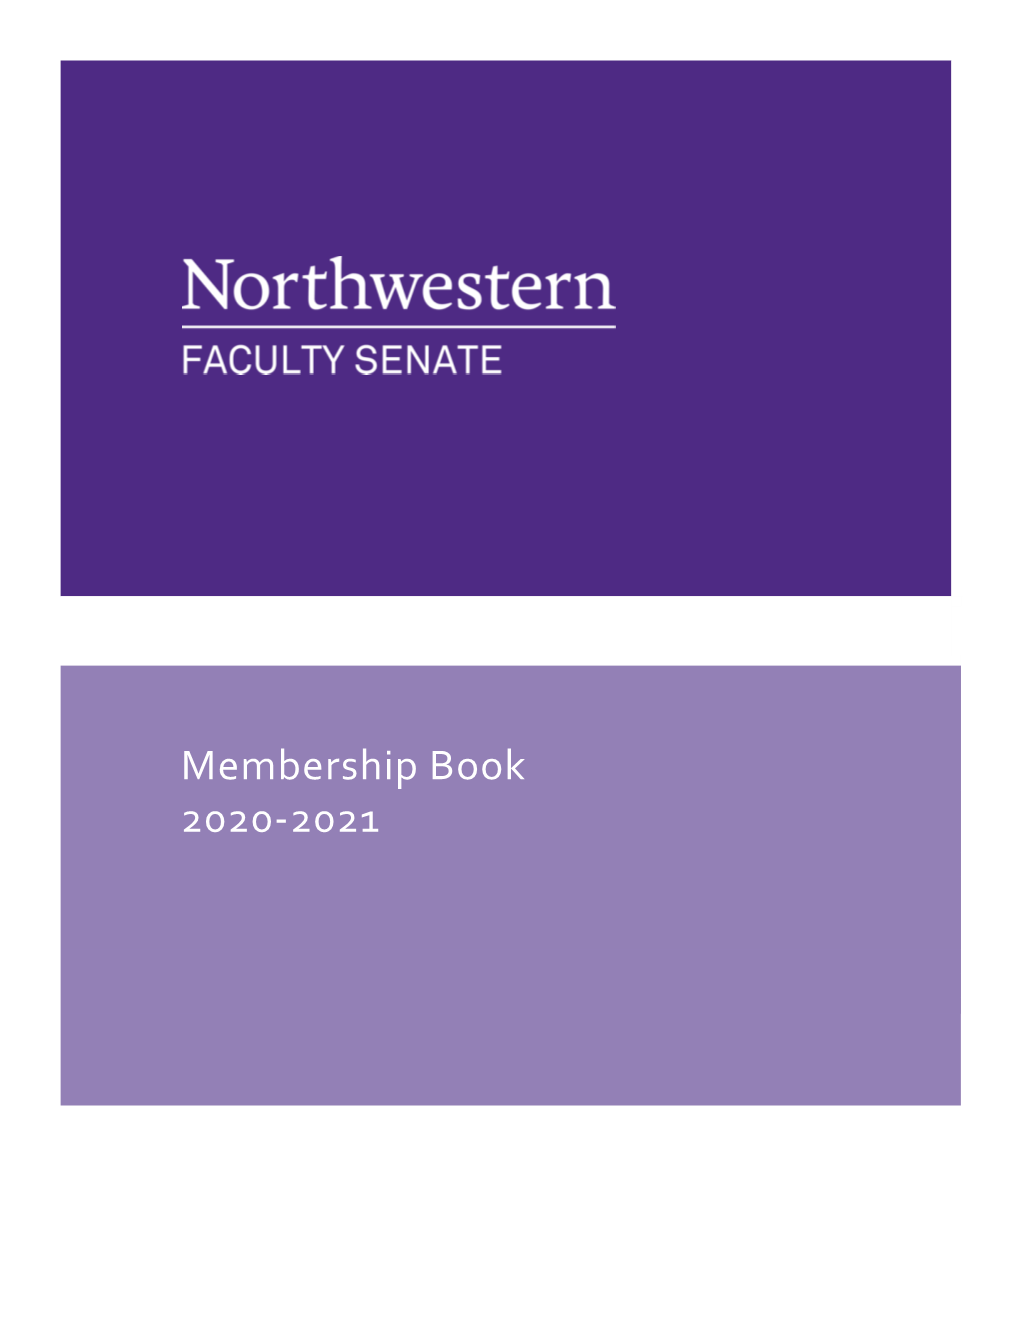 Membership Book 2020-2021